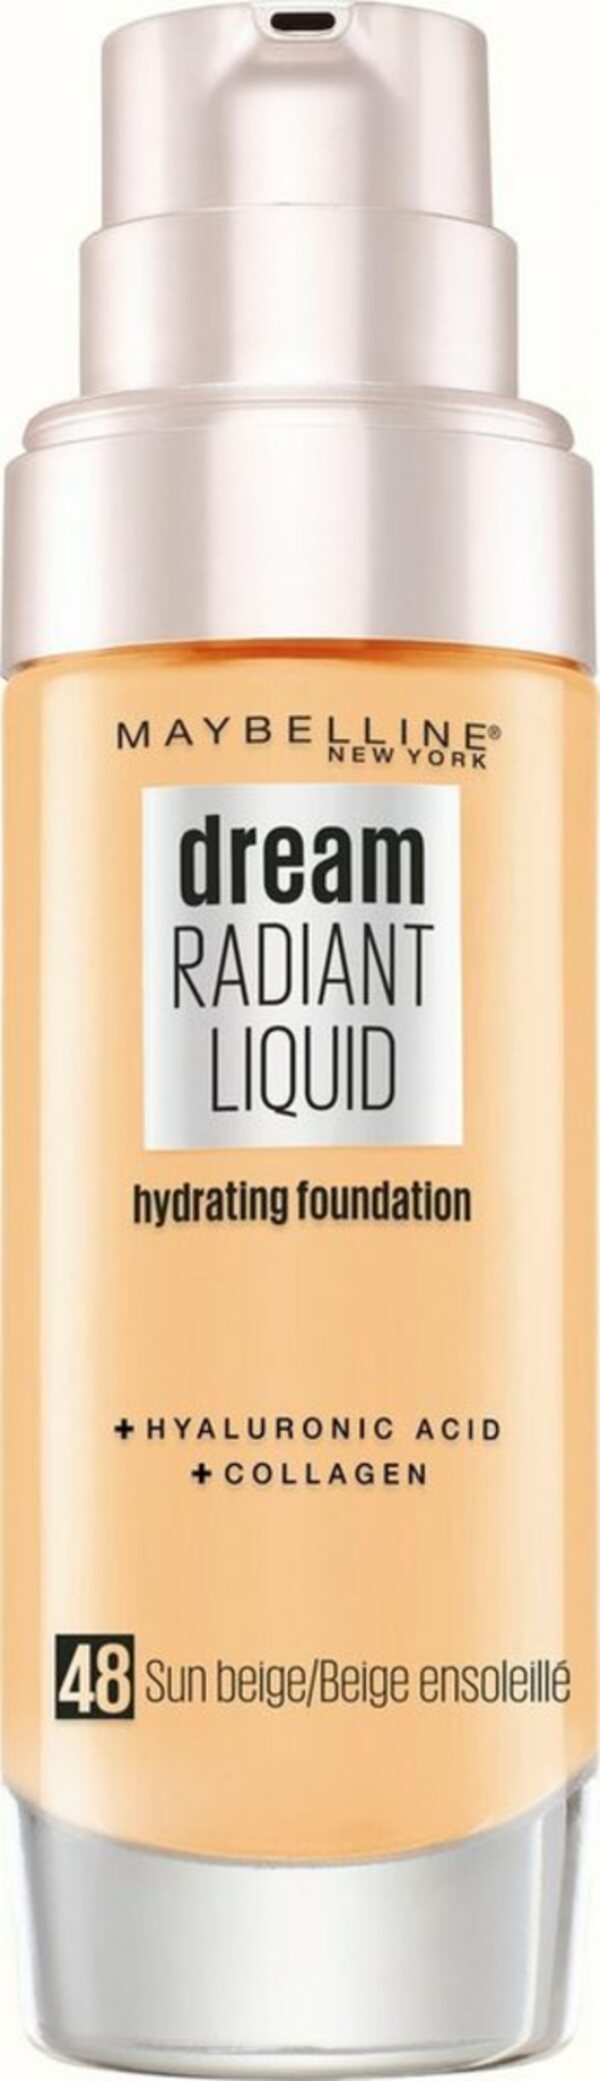 Bild 1 von MAYBELLINE NEW YORK Foundation Dream Radiant Liquid